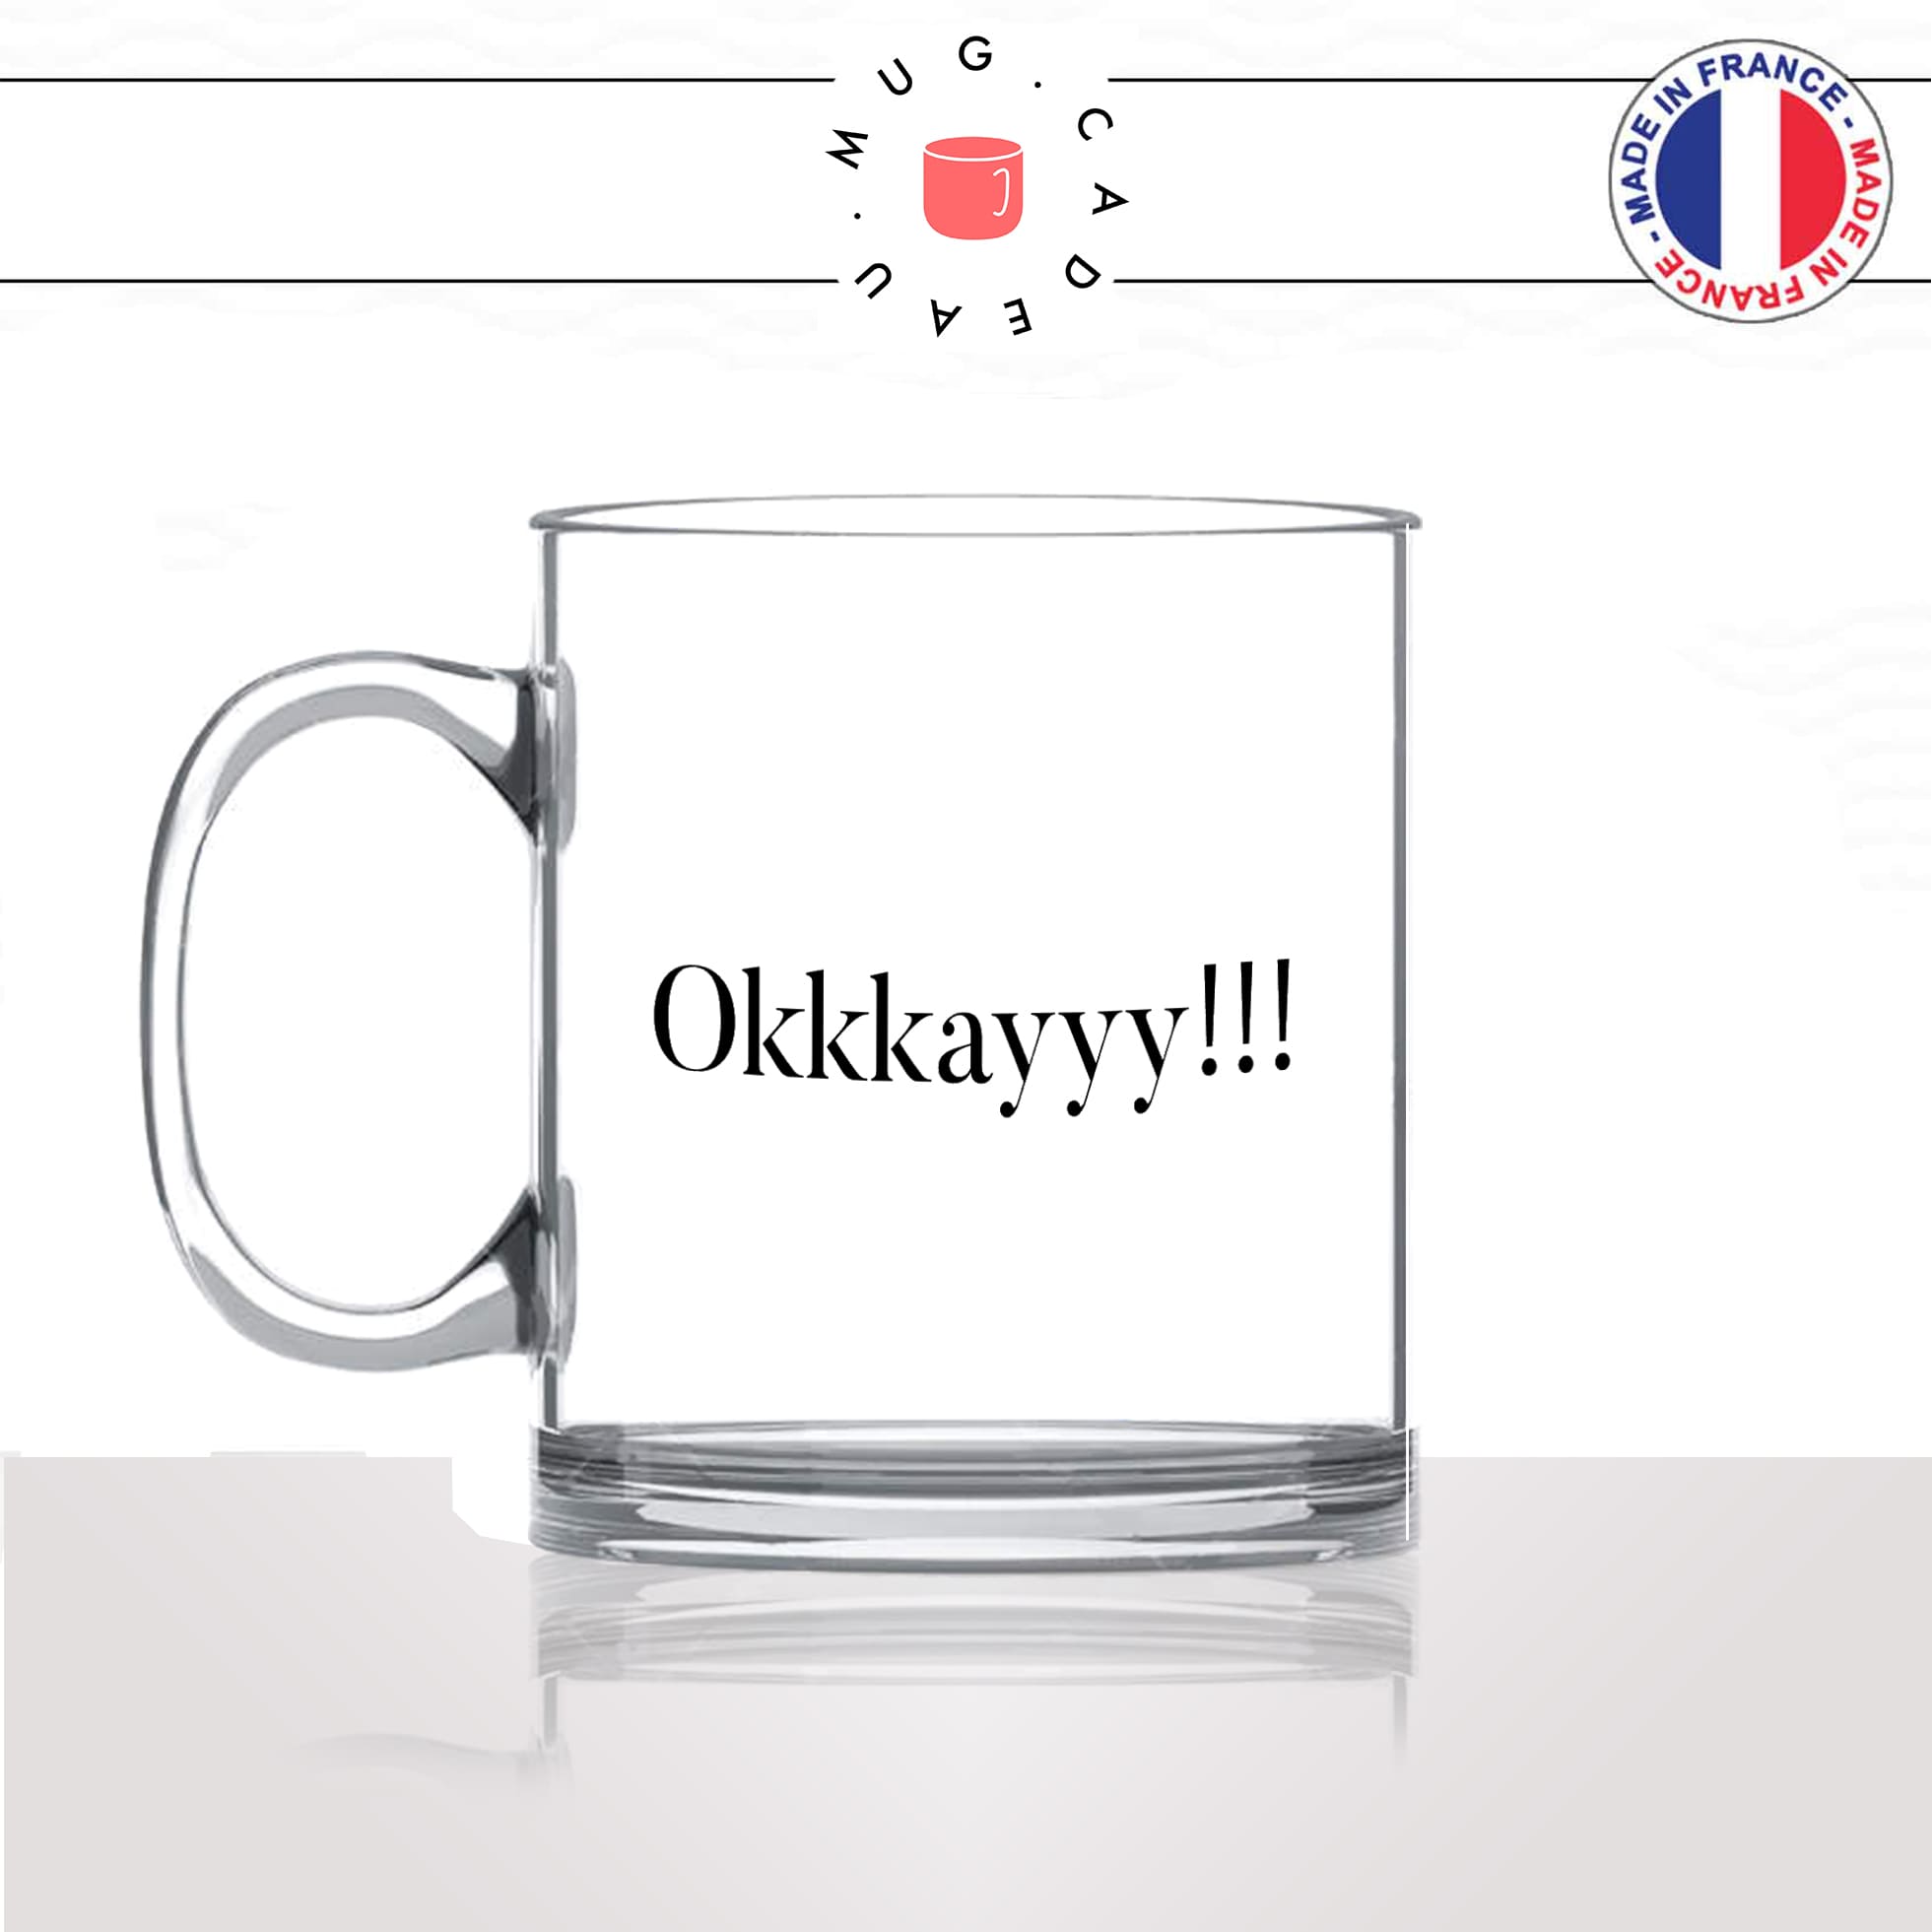 mug-tasse-en-verre-transparent-glass-film-les-visiteurs-okkkkay-ok-okay-clavier-collegue-humour-francais-idée-cadeau-fun-cool-café-thé